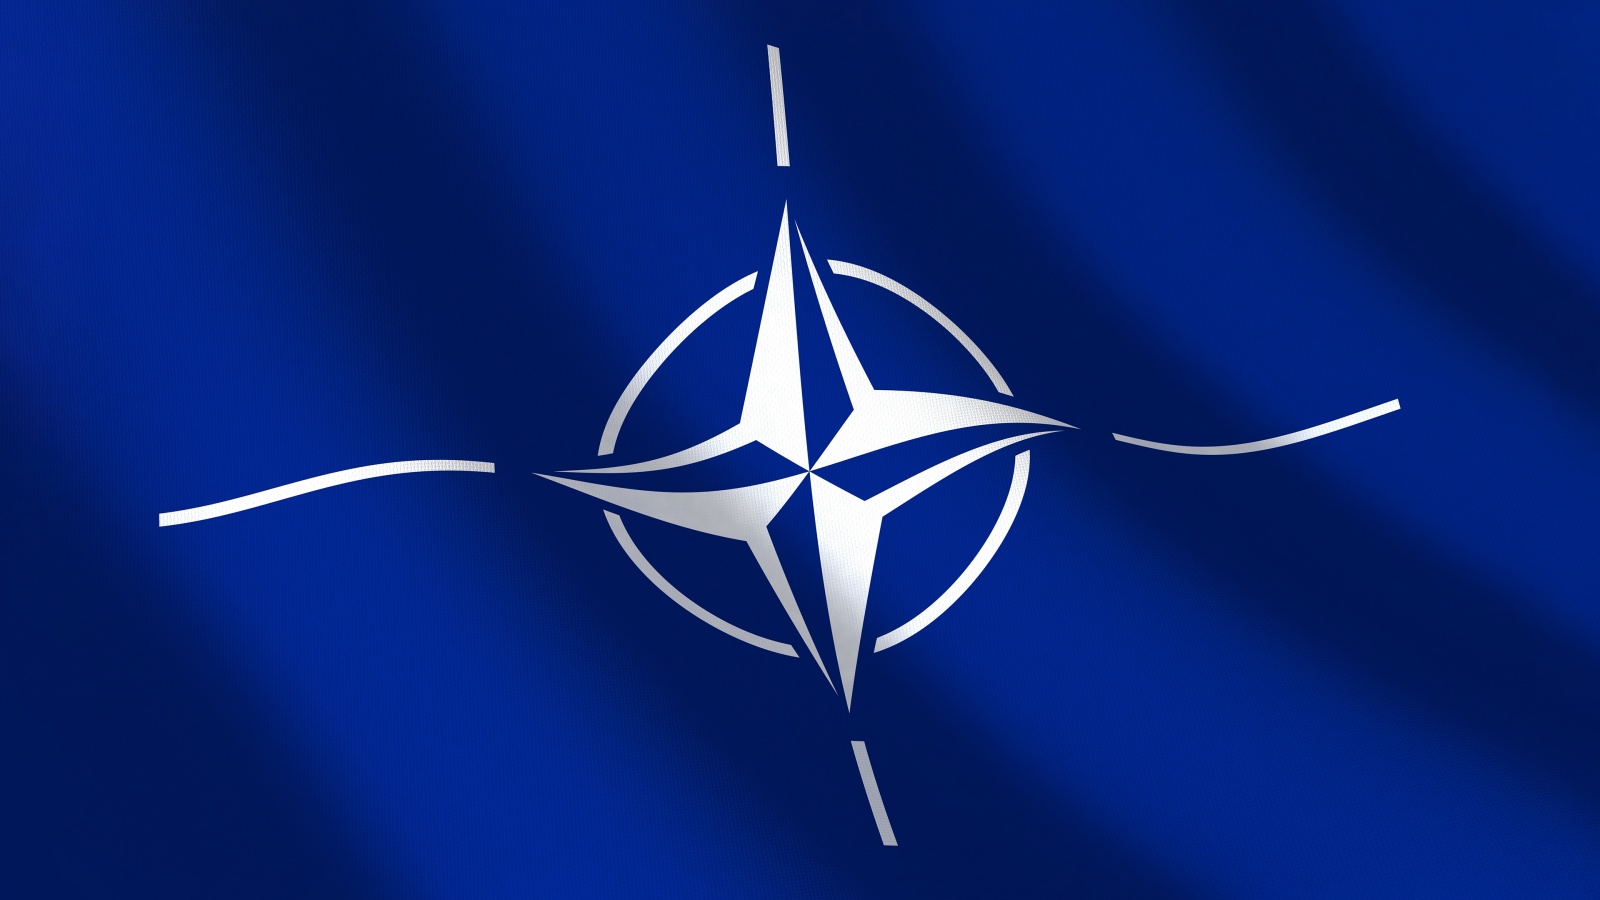 NATO järjesti harjoituksen BALTOPS222 yhteistyössä Ruotsin kanssa